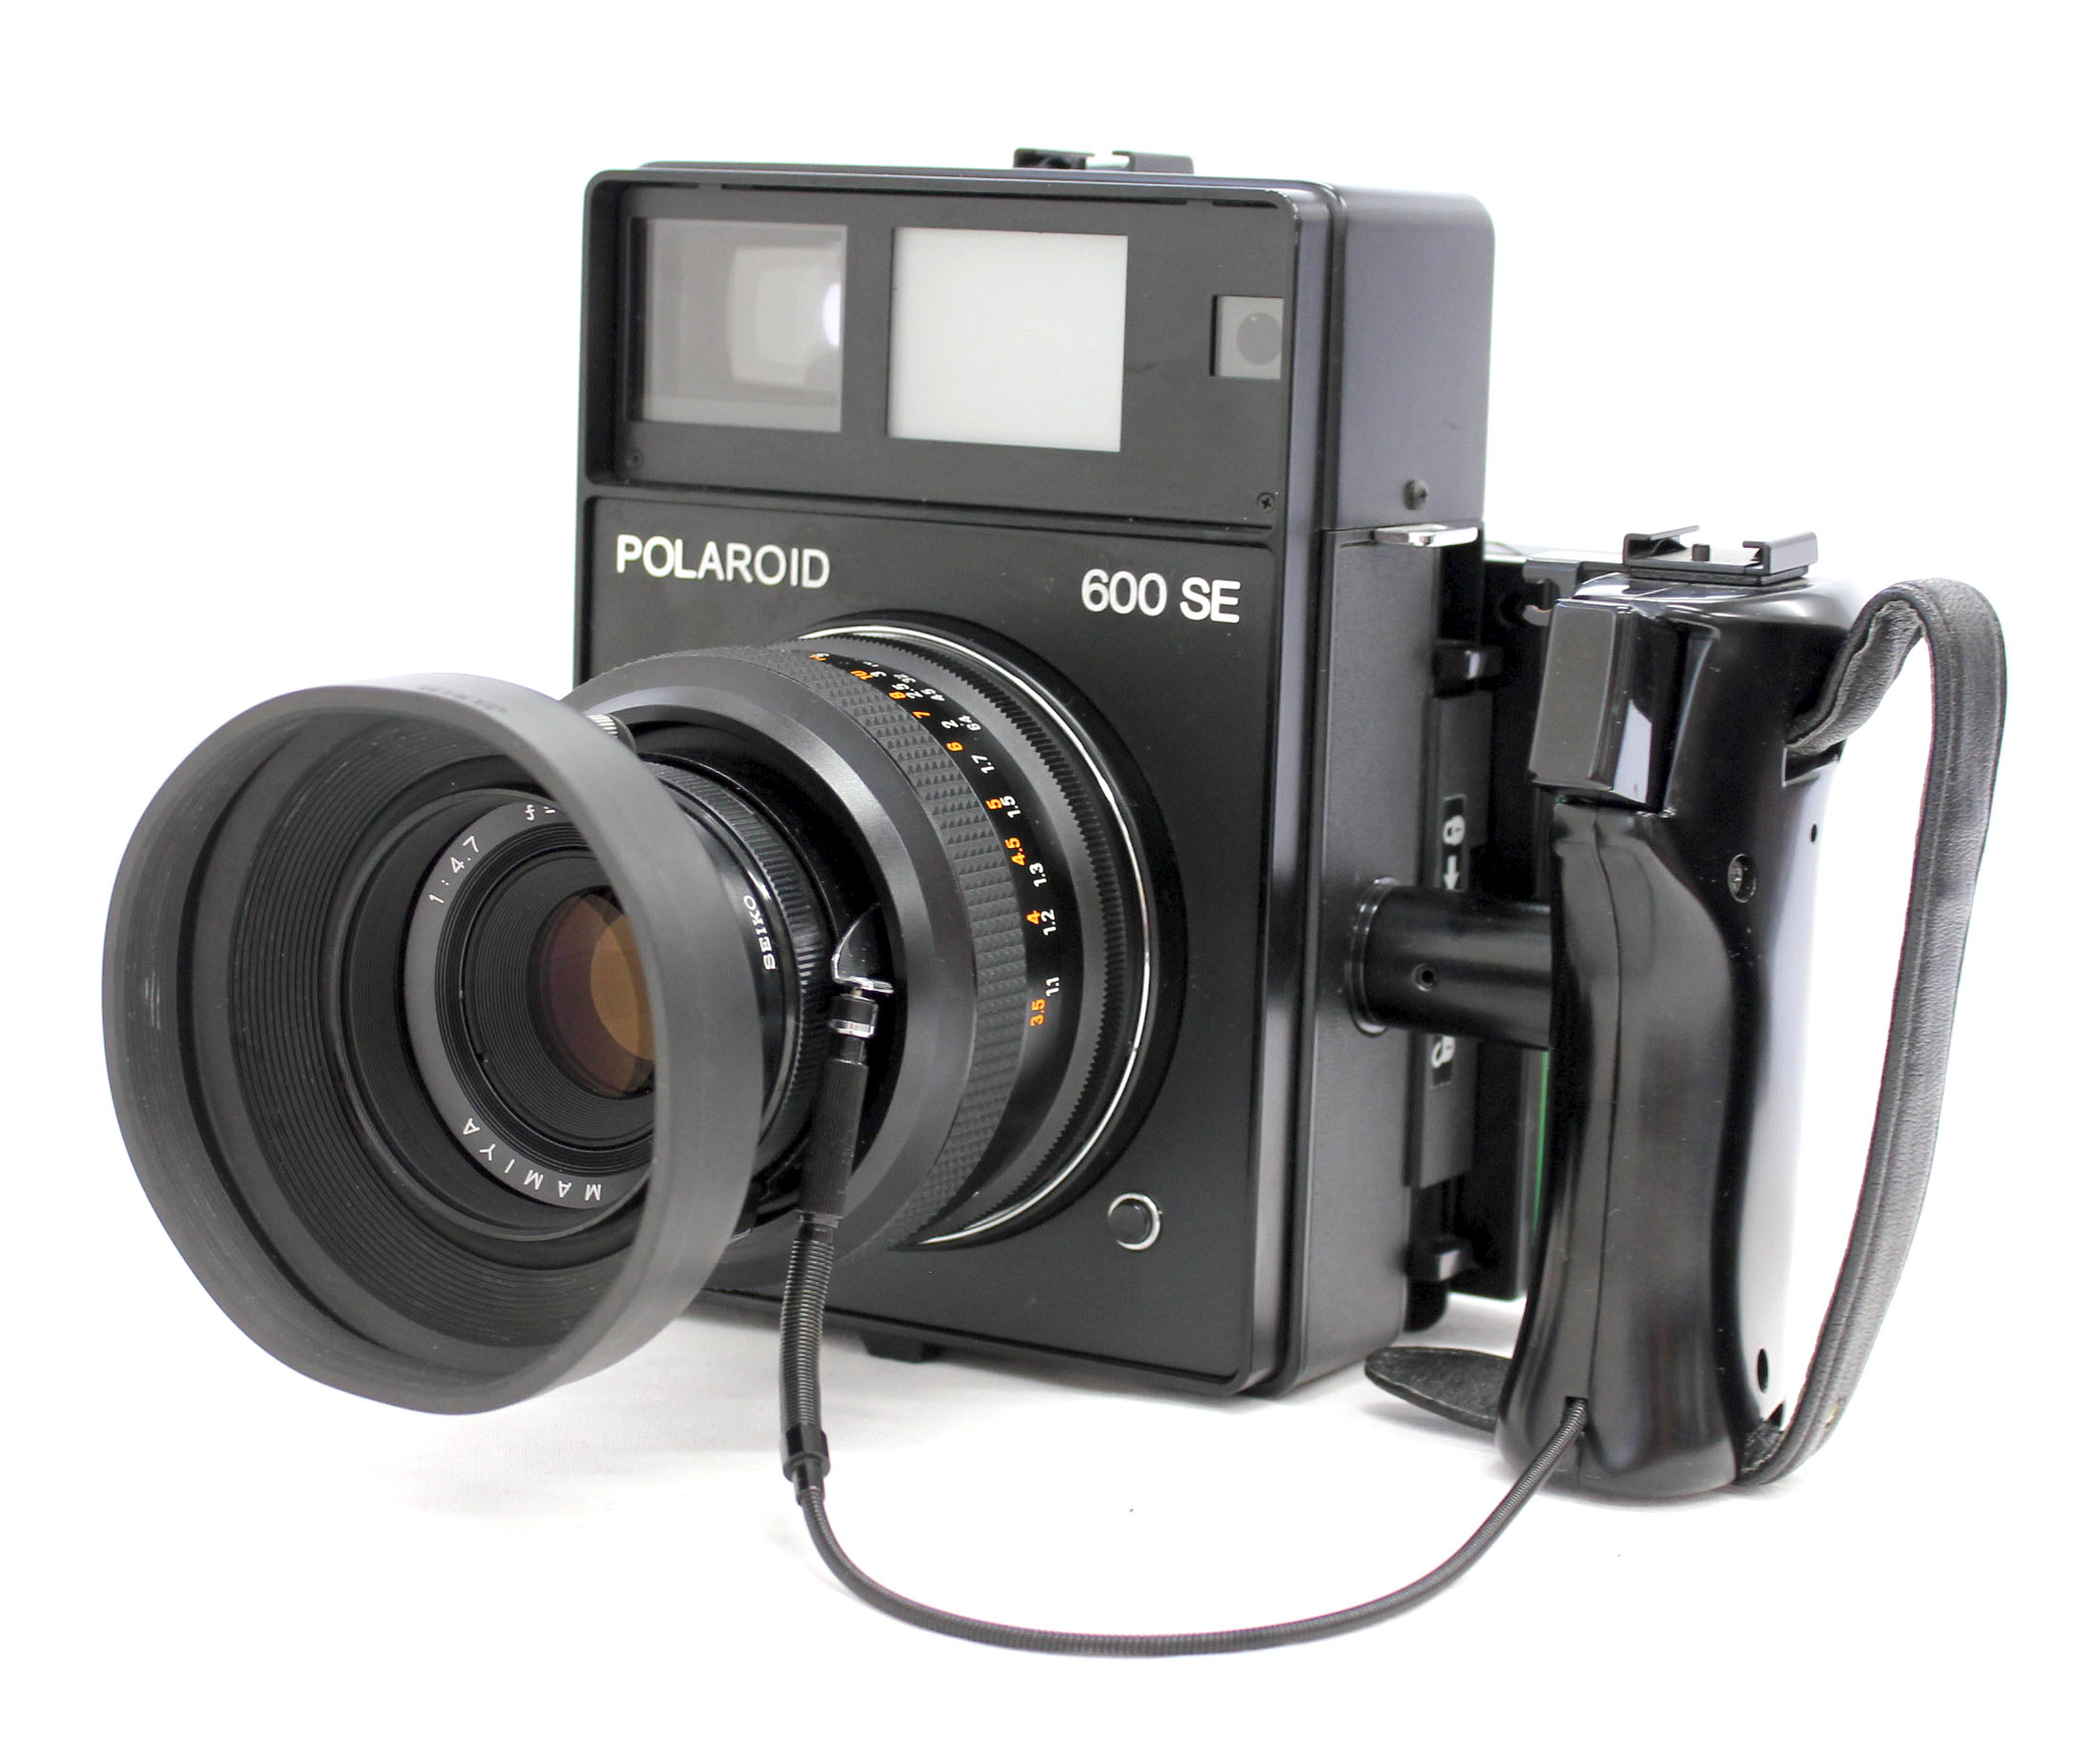  Polaroid 600SE Instant Camera w/ Mamiya 127mm F/4.7 Lens and Polaroid Back from Japan